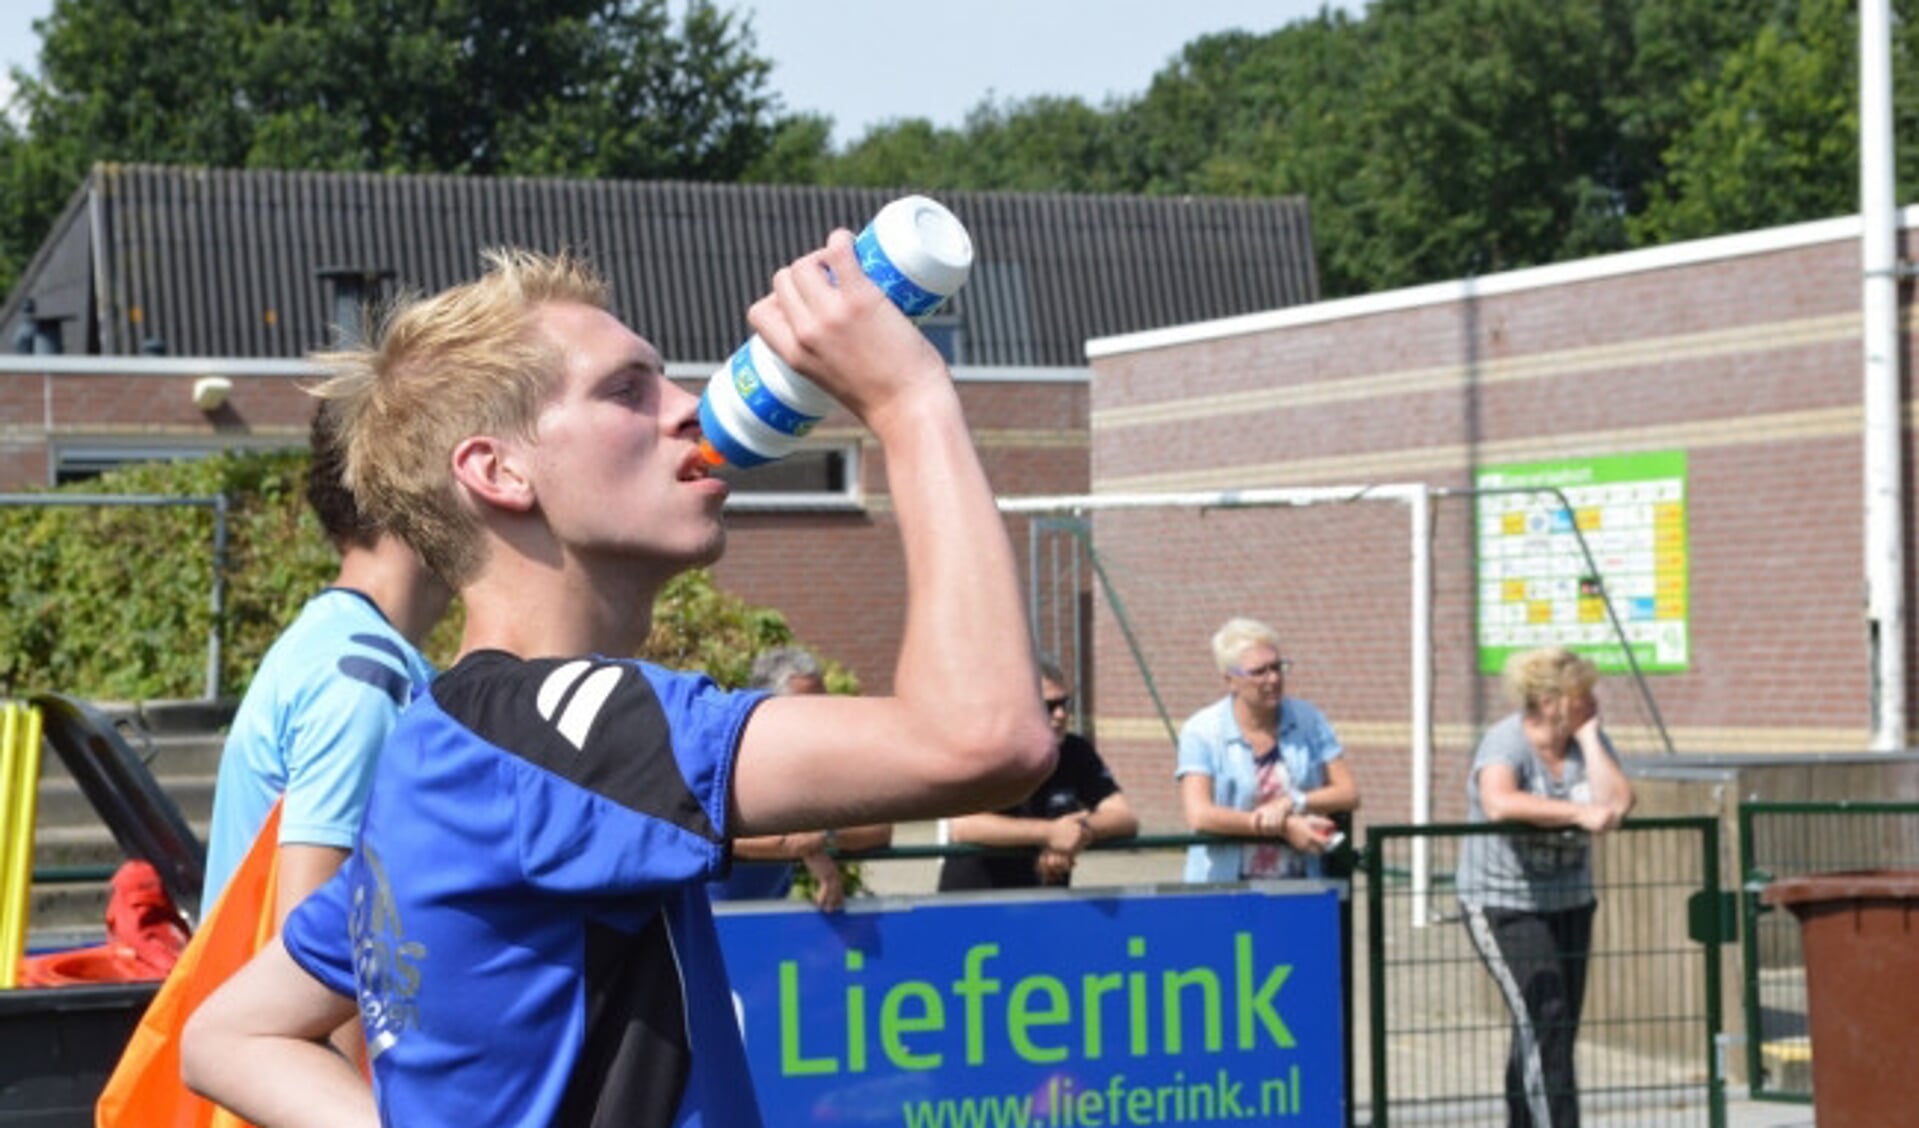  Jodi de Boer scoorde in de voorbereiding drie keer.